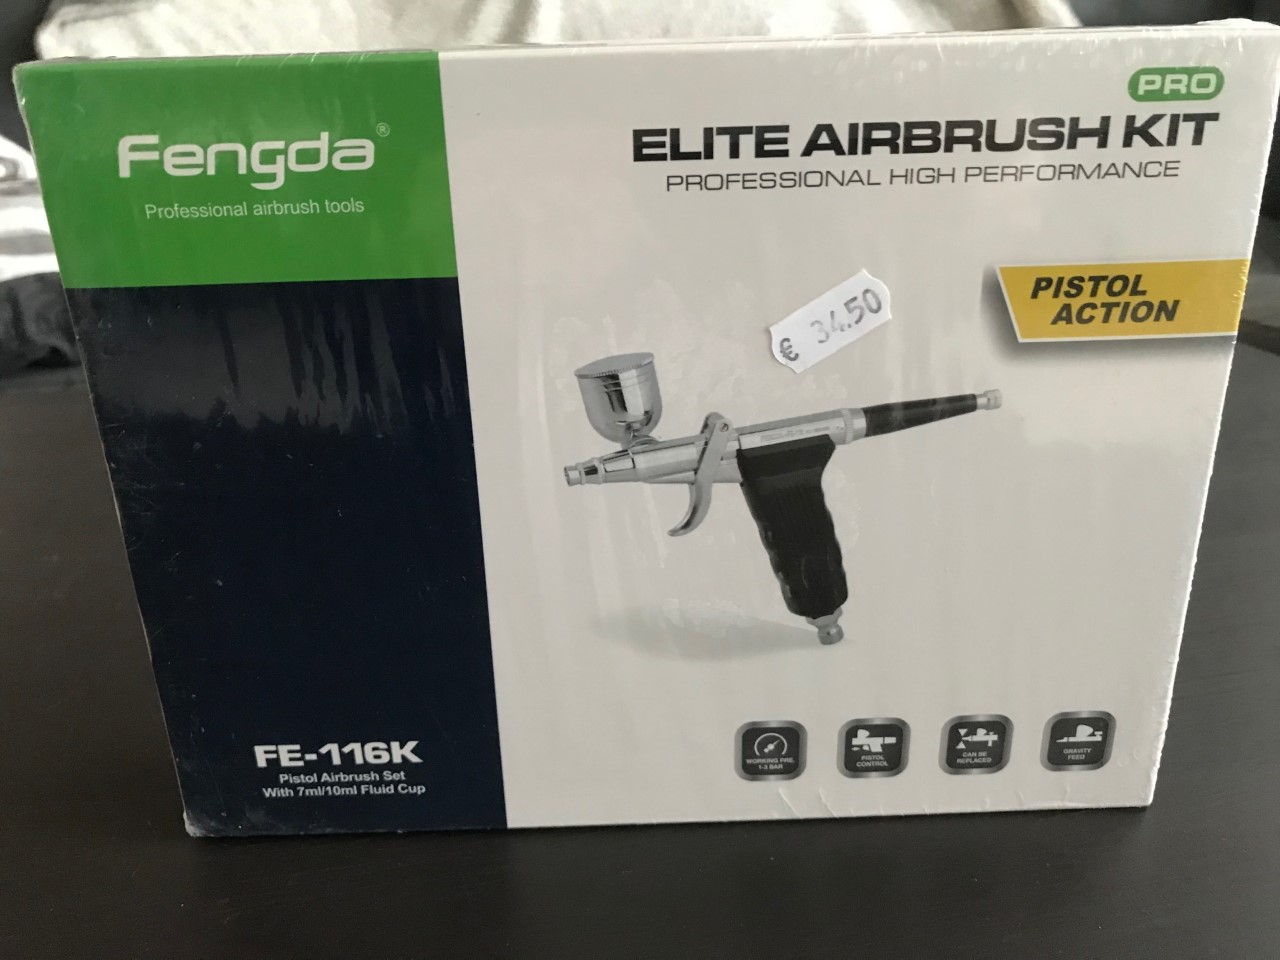 Fengda elite airbrush kit pistol action FE-116K